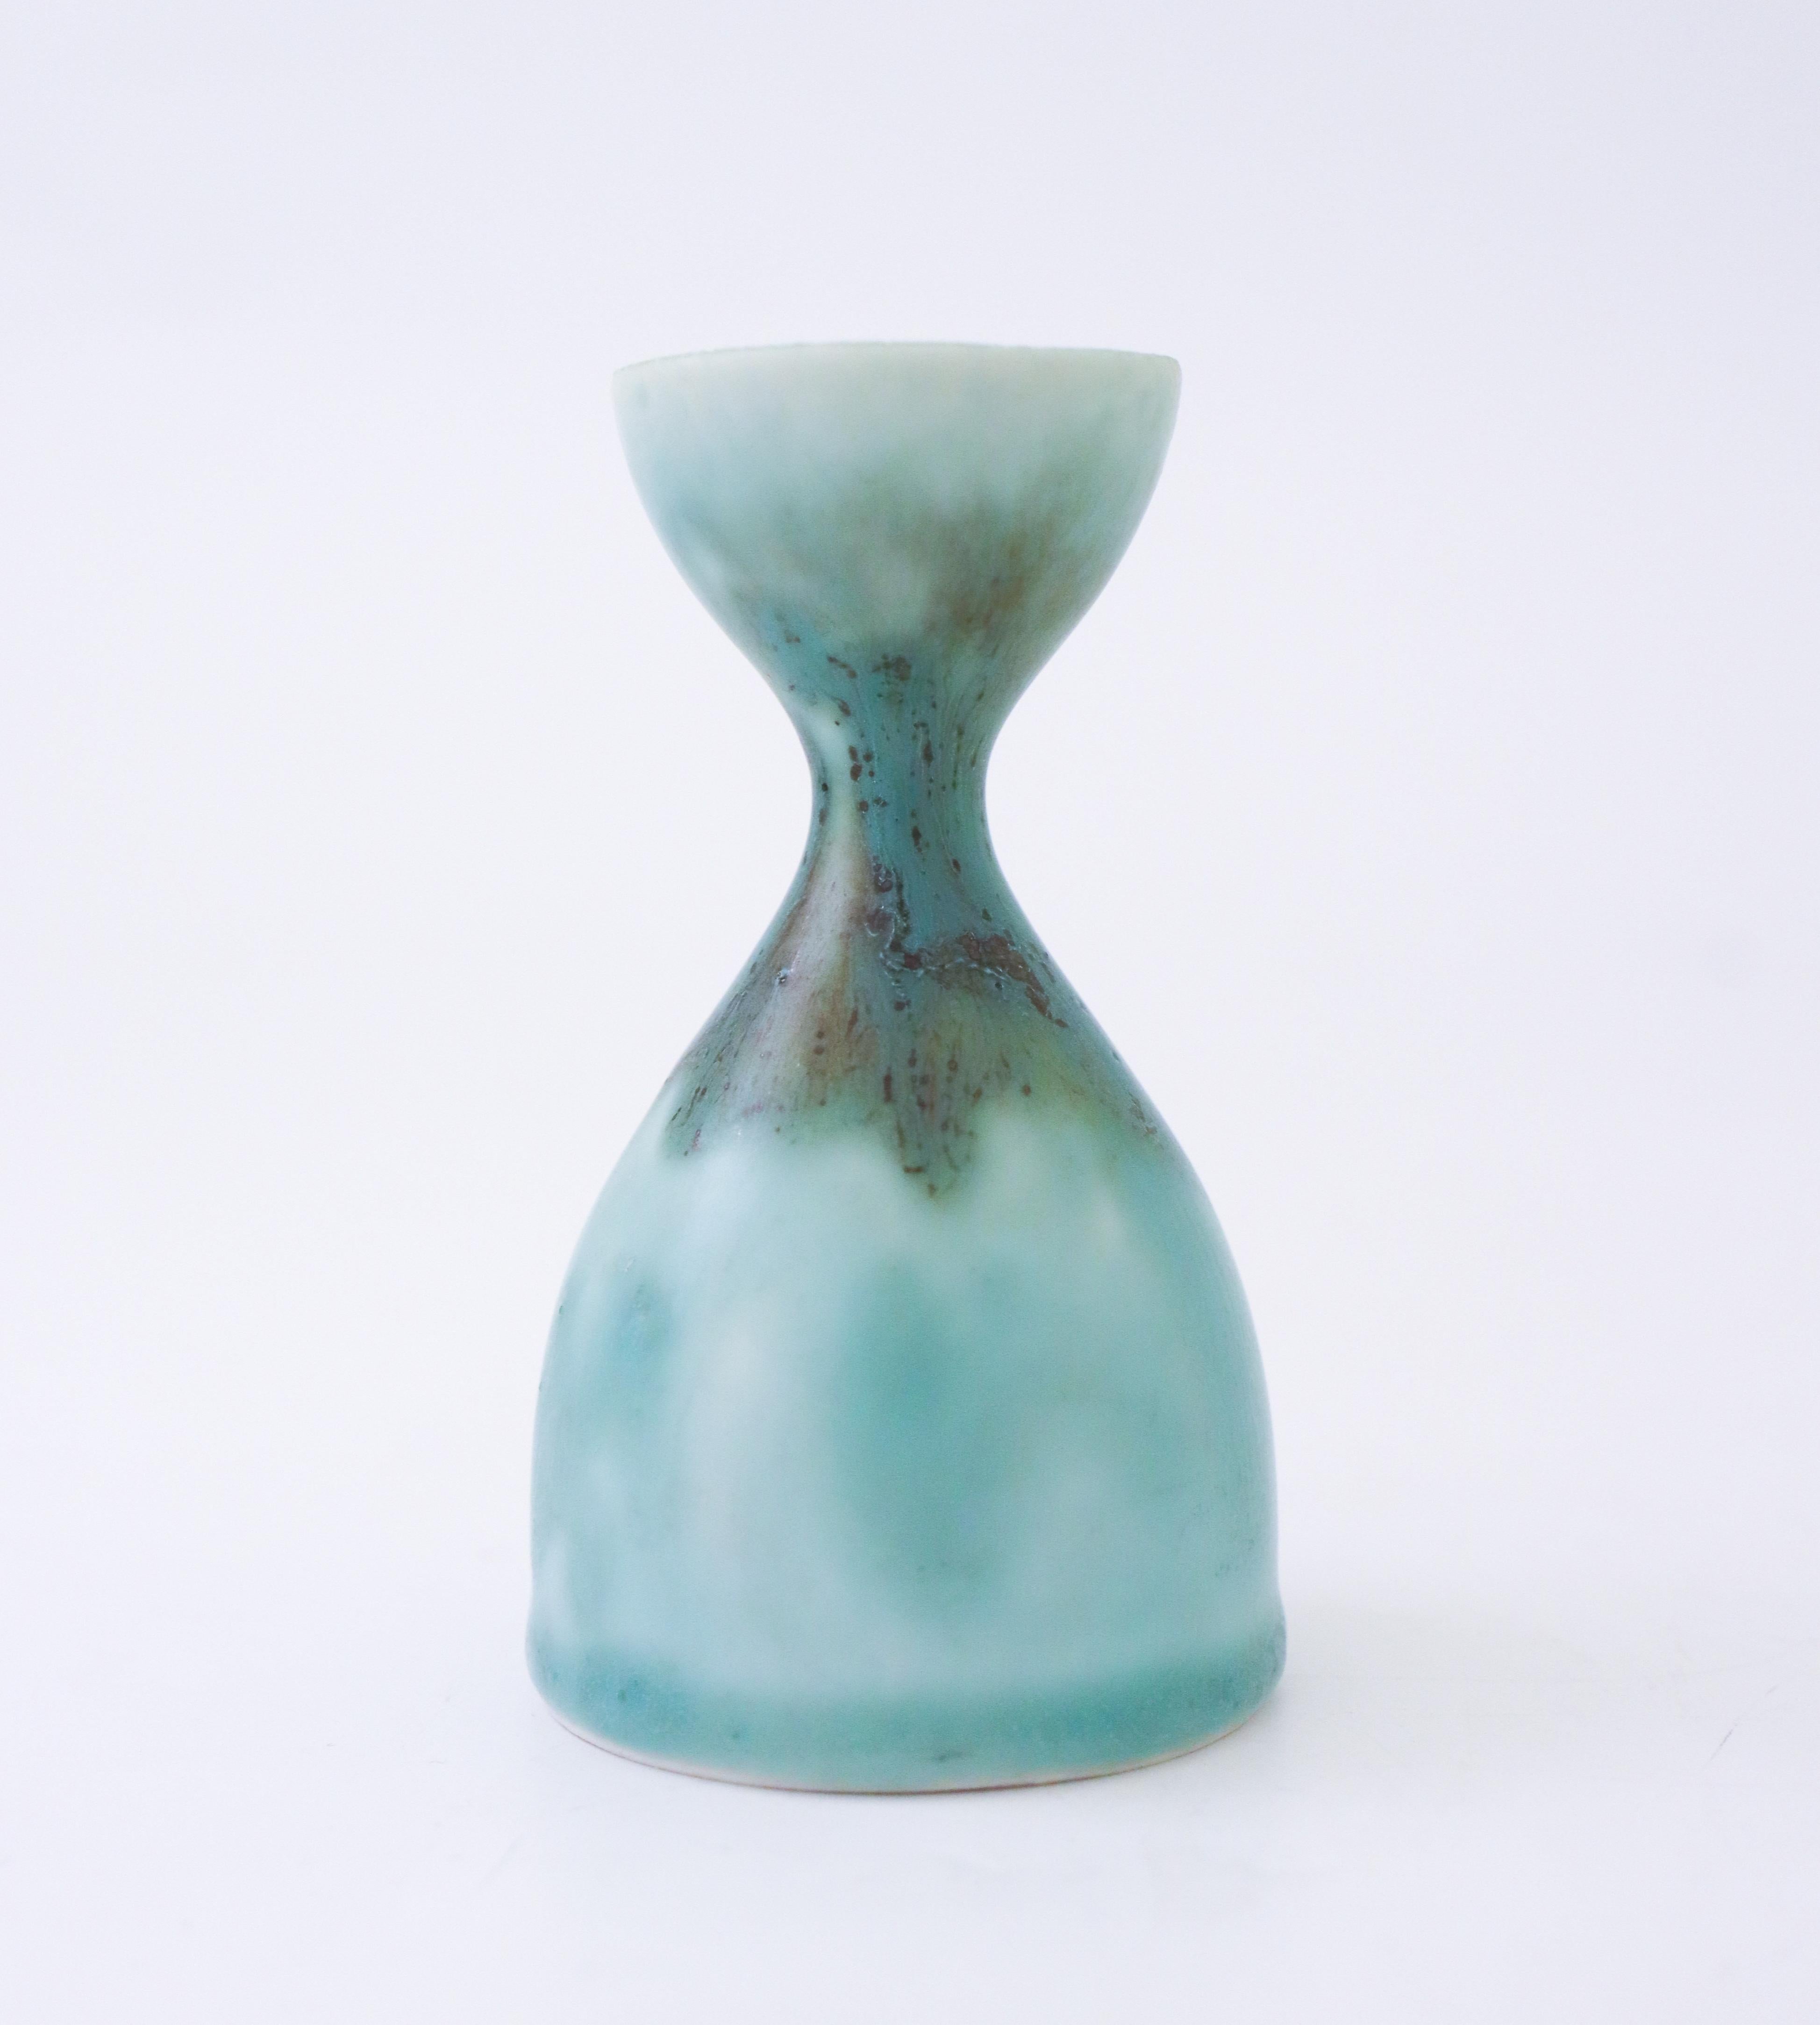 Un joli vase turquoise conçu par Carl-Harry Stålhane à Rörstrand, il mesure 9 cm (3,6